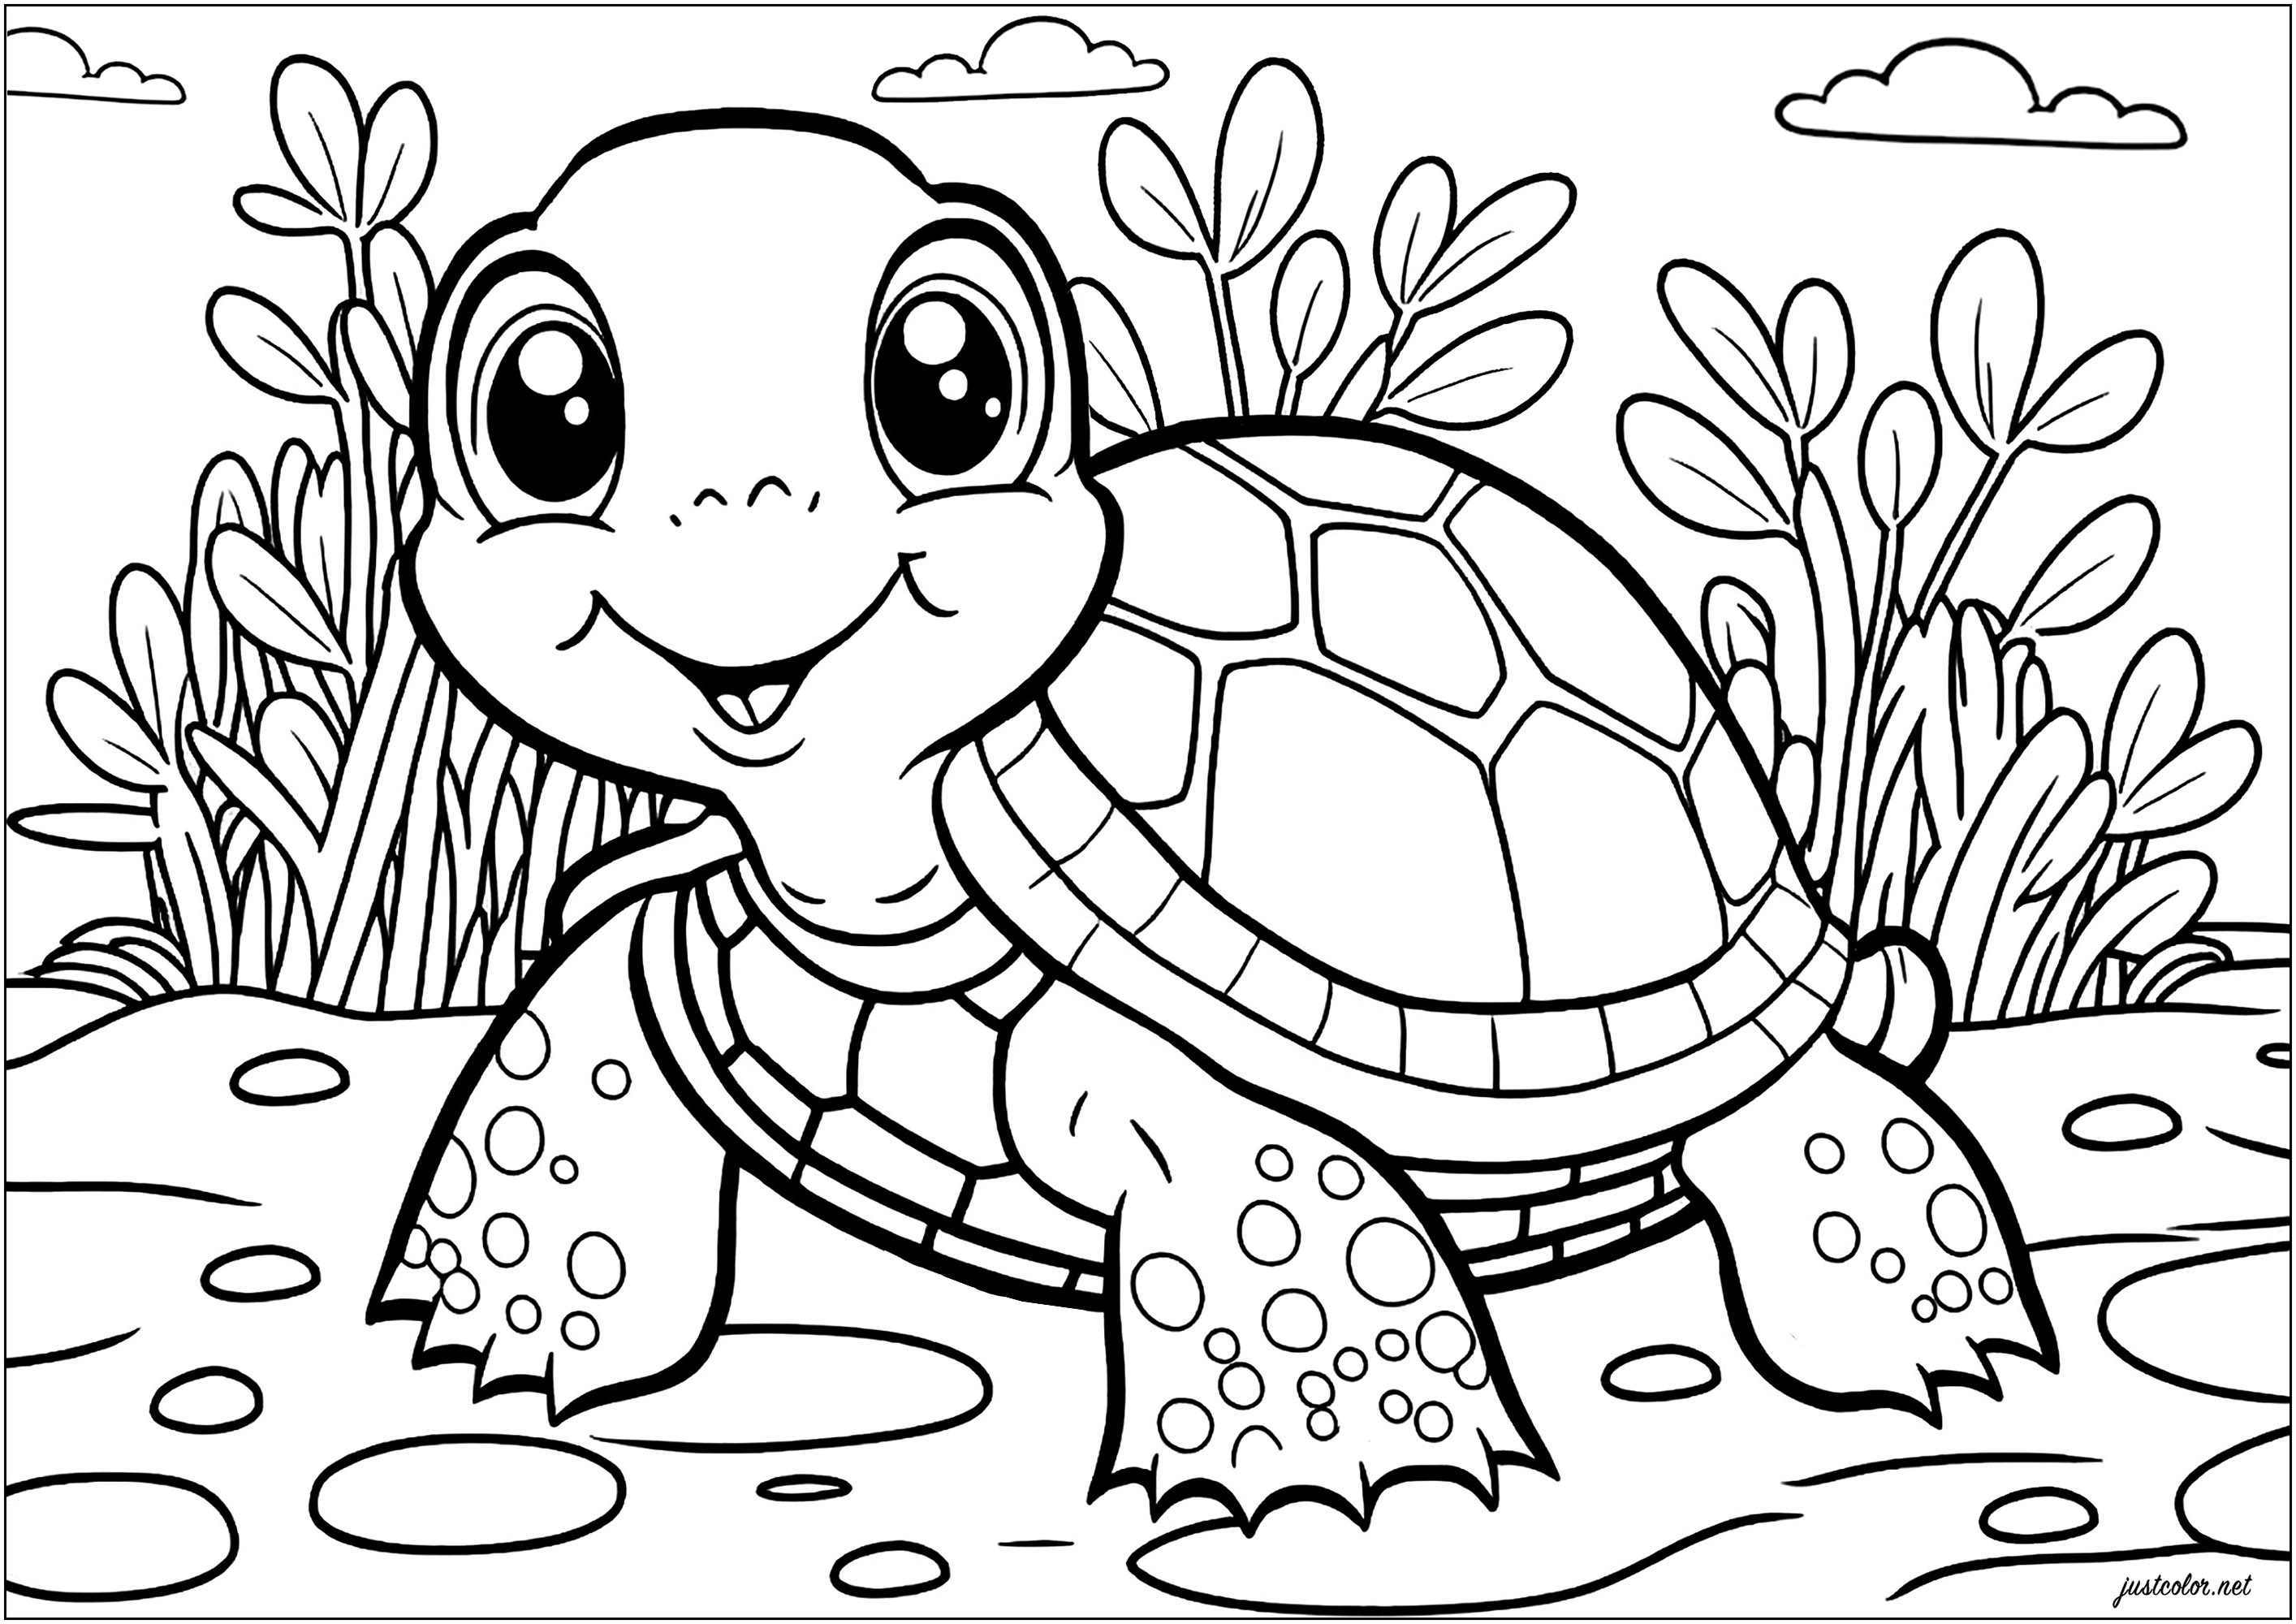 Tortuga sonriente para colorear. Dibuja el mundo natural que rodea a esta tortuga sonriente con tu creatividad y tus colores favoritos. Una página para colorear con un aspecto muy infantil, pero llena de detalles.